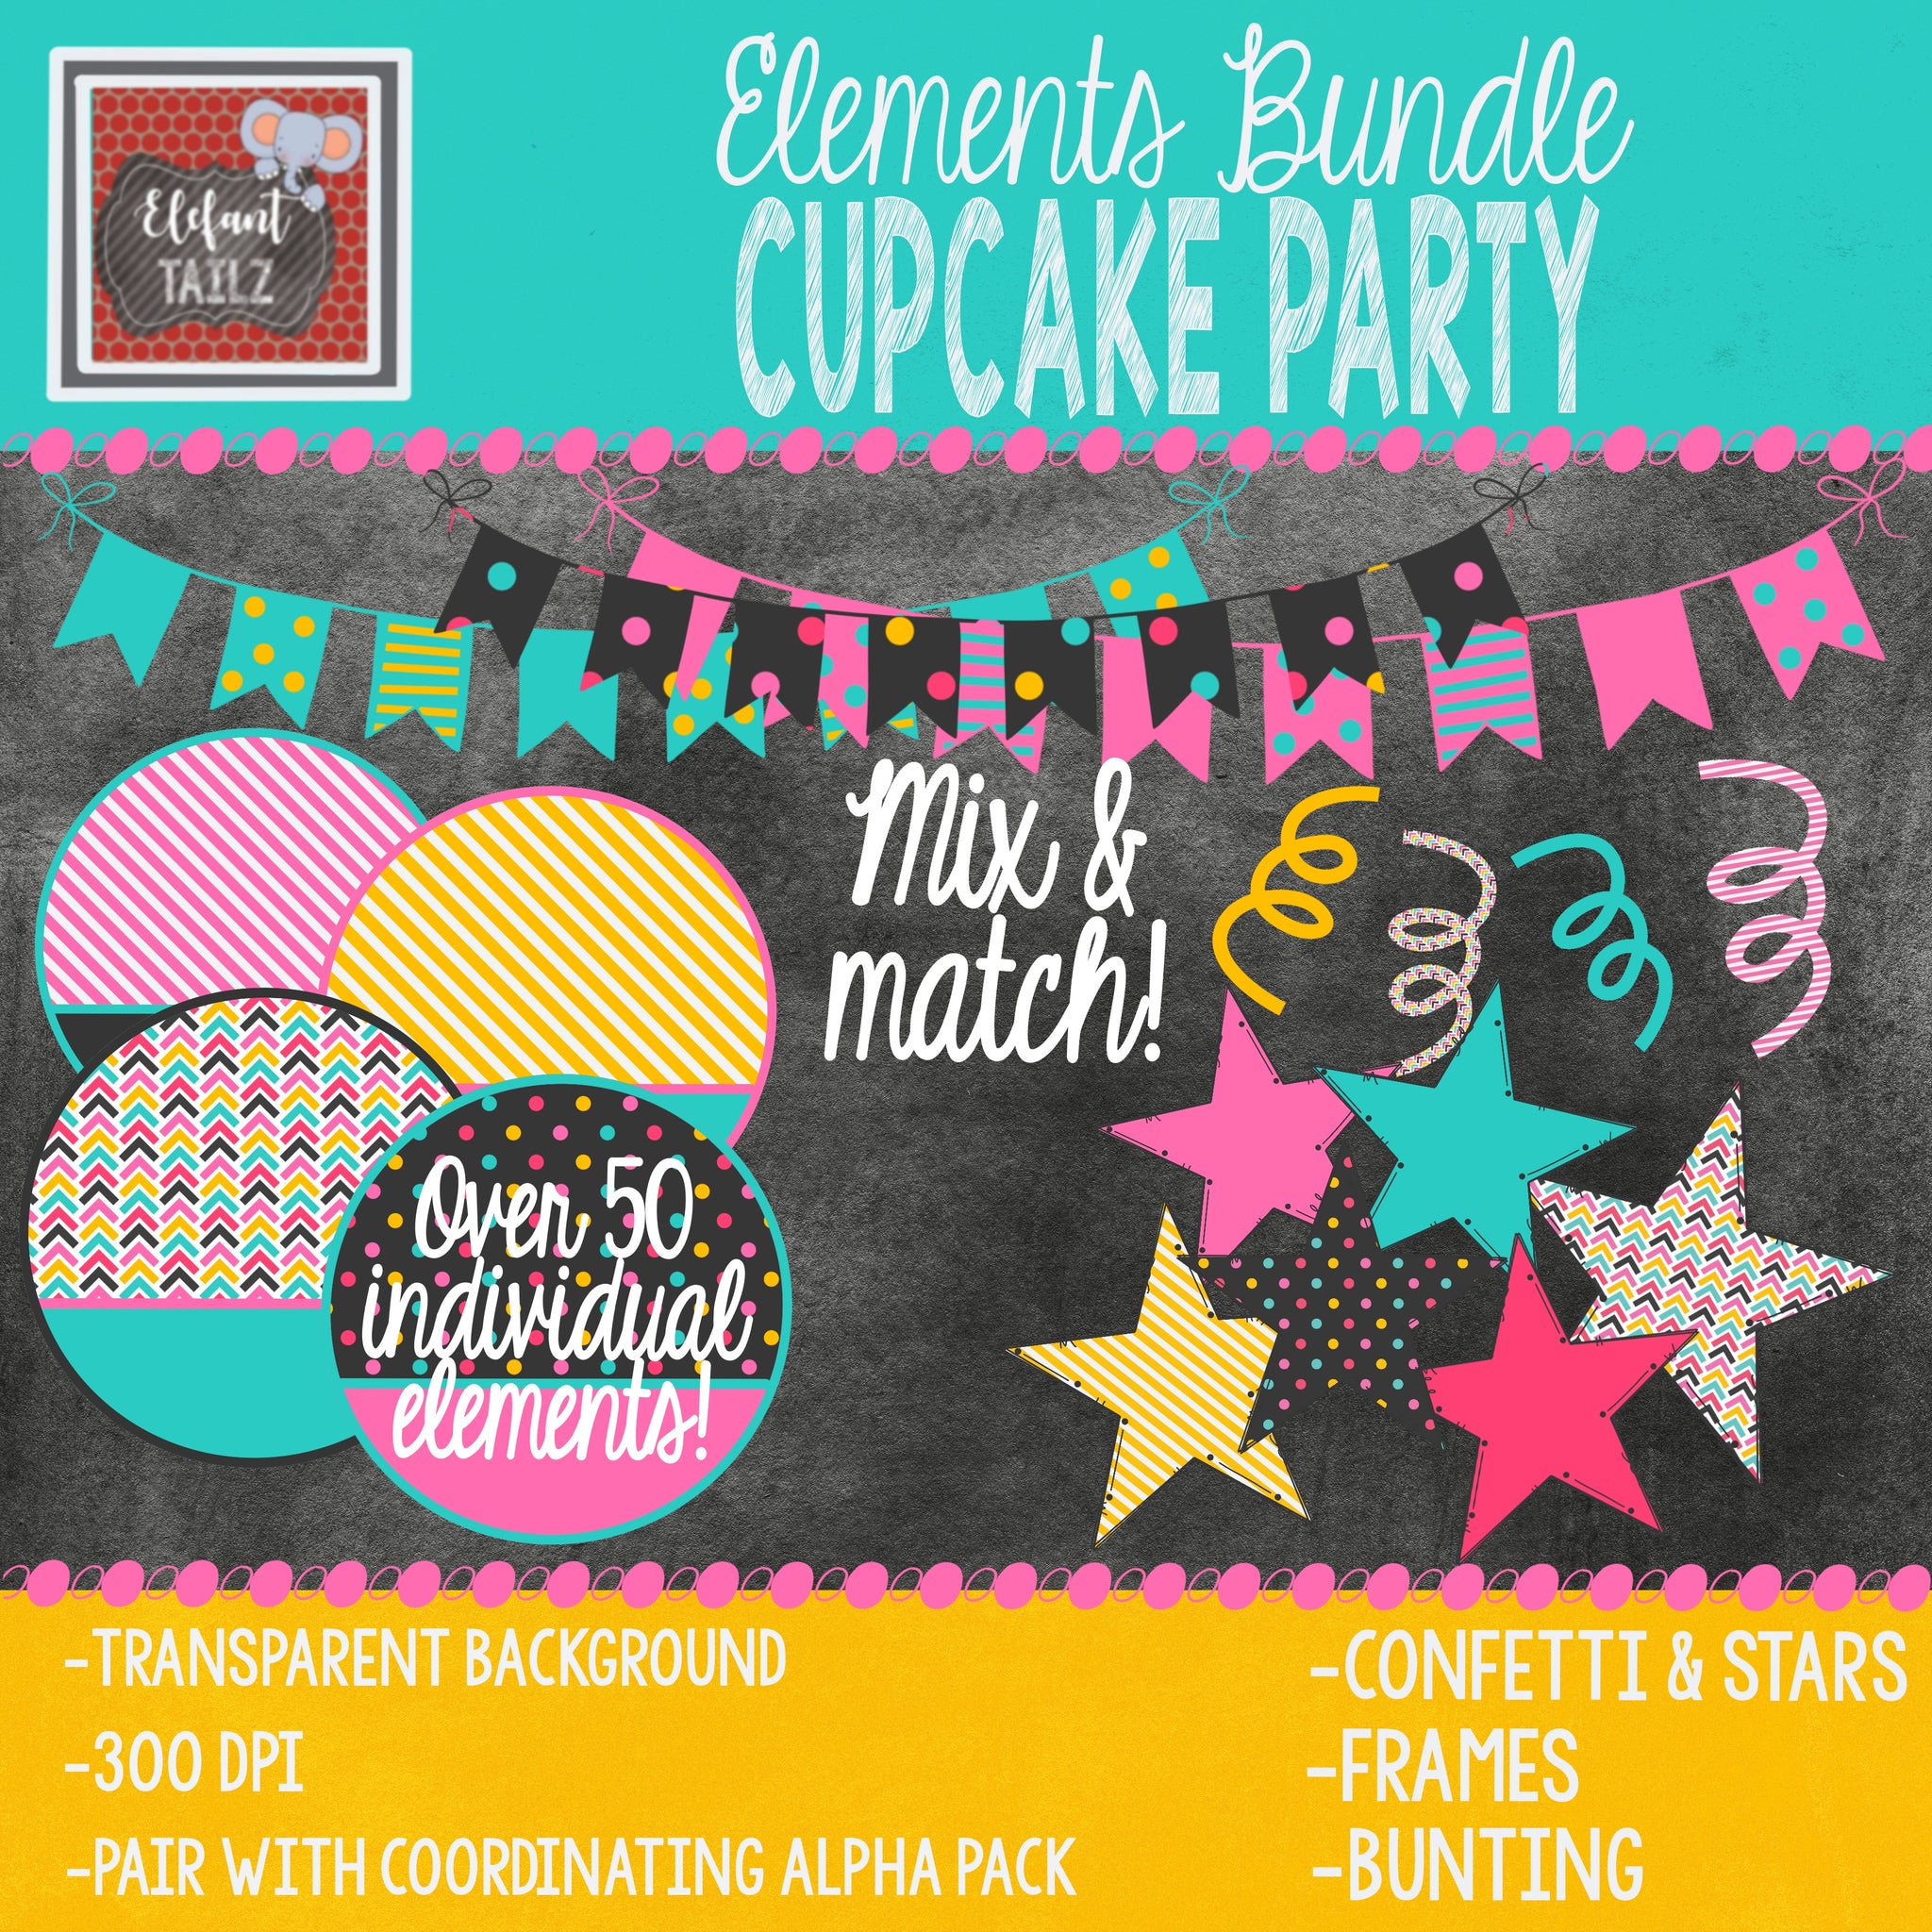 Cupcake Party Elements BUNDLE